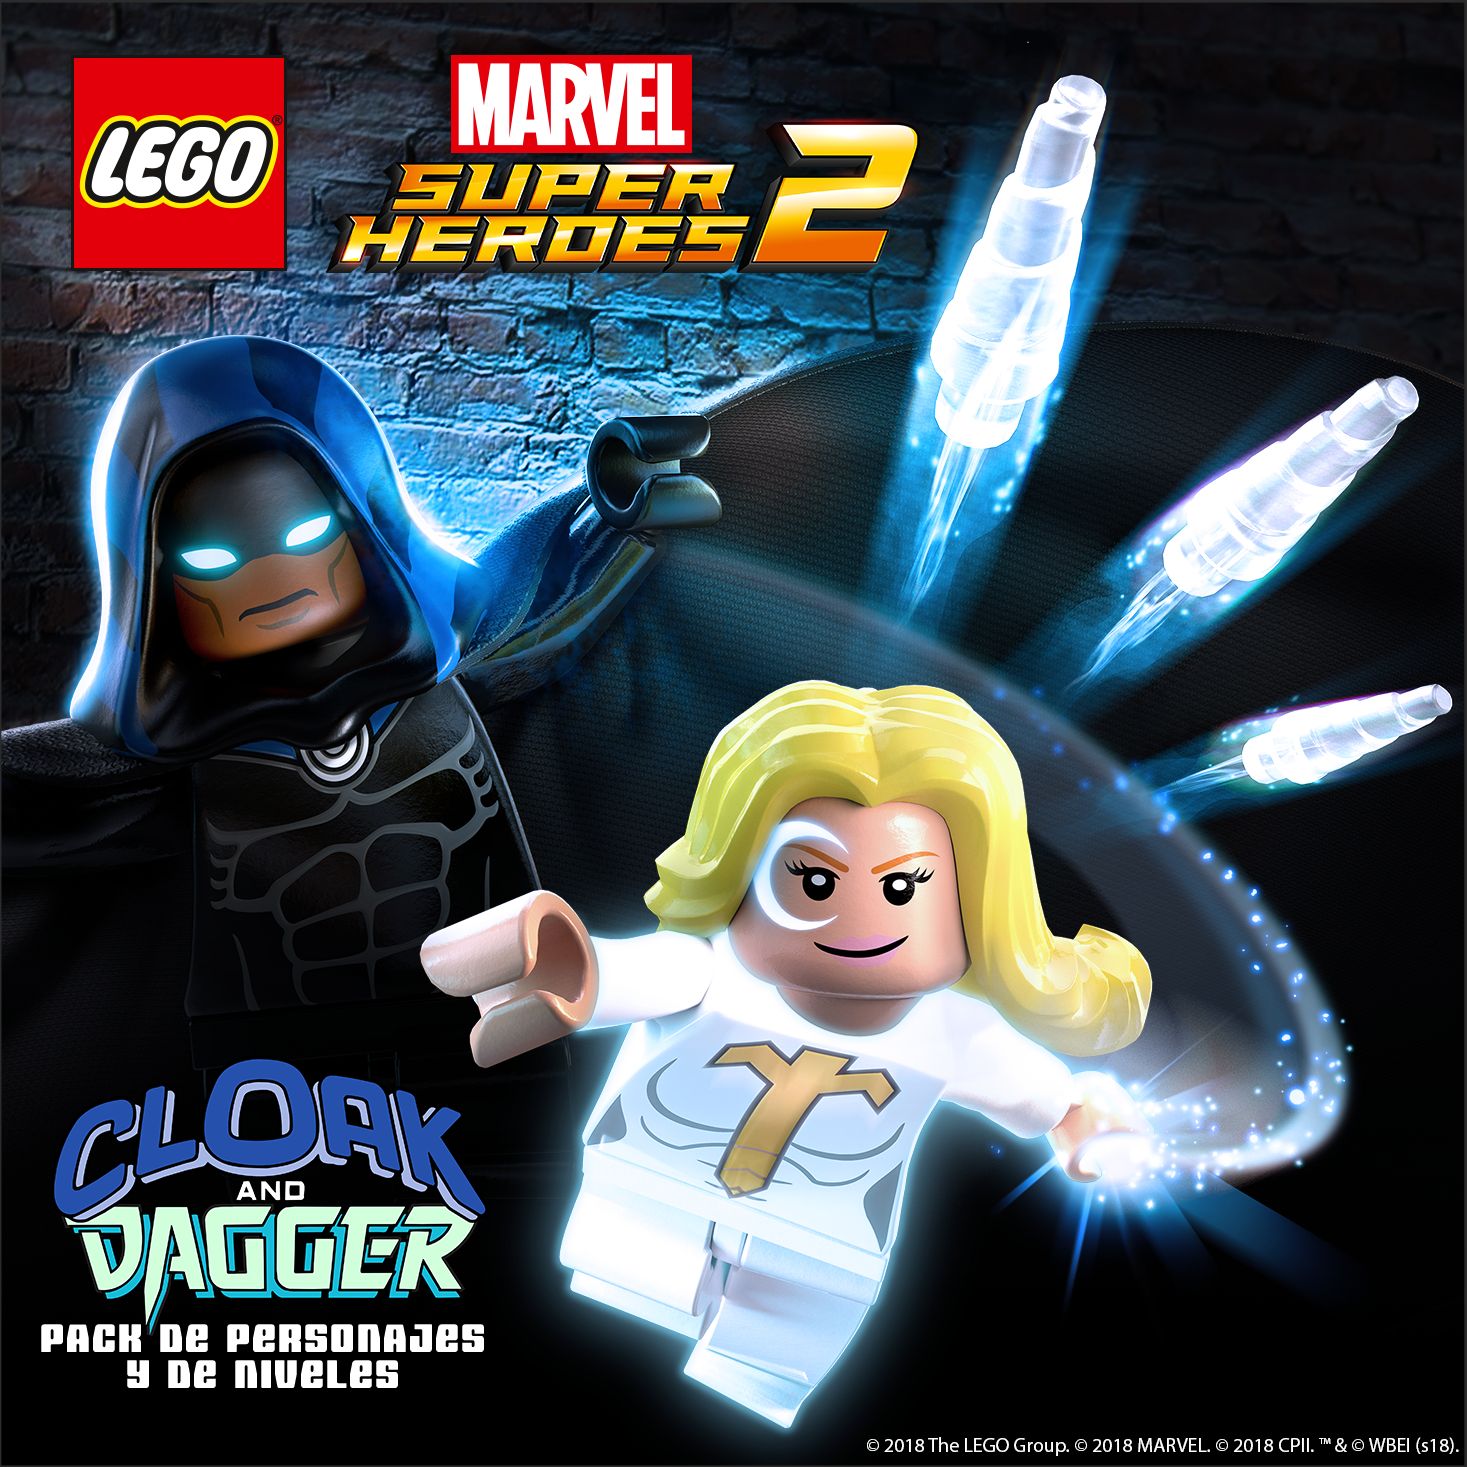 Anunciado un nuevo DLC de LEGO Marvel Super Heroes 2